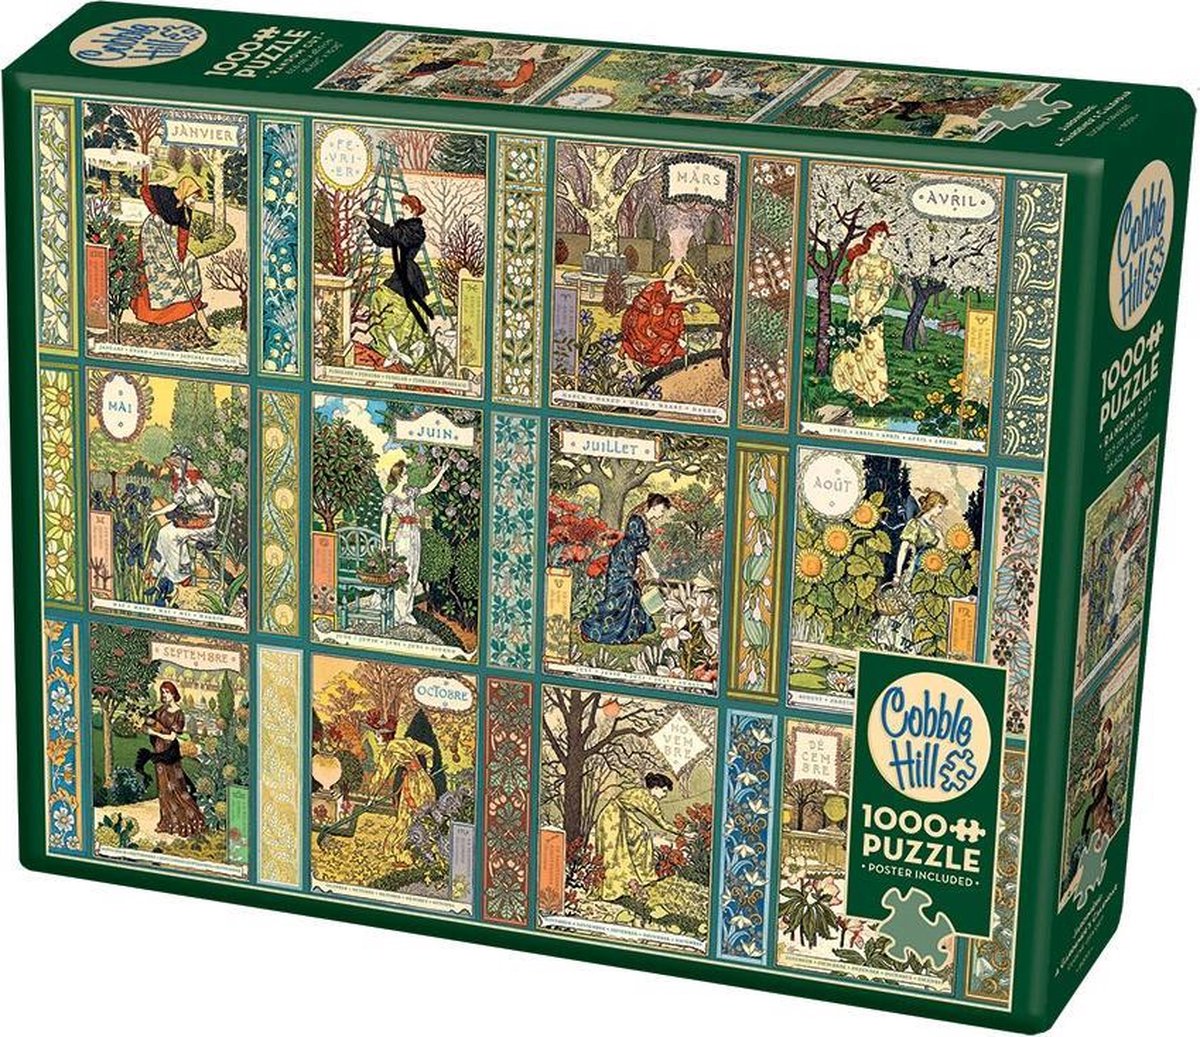 Cobble Hill legpuzzel 1000 stukjes Franse kalendermaanden